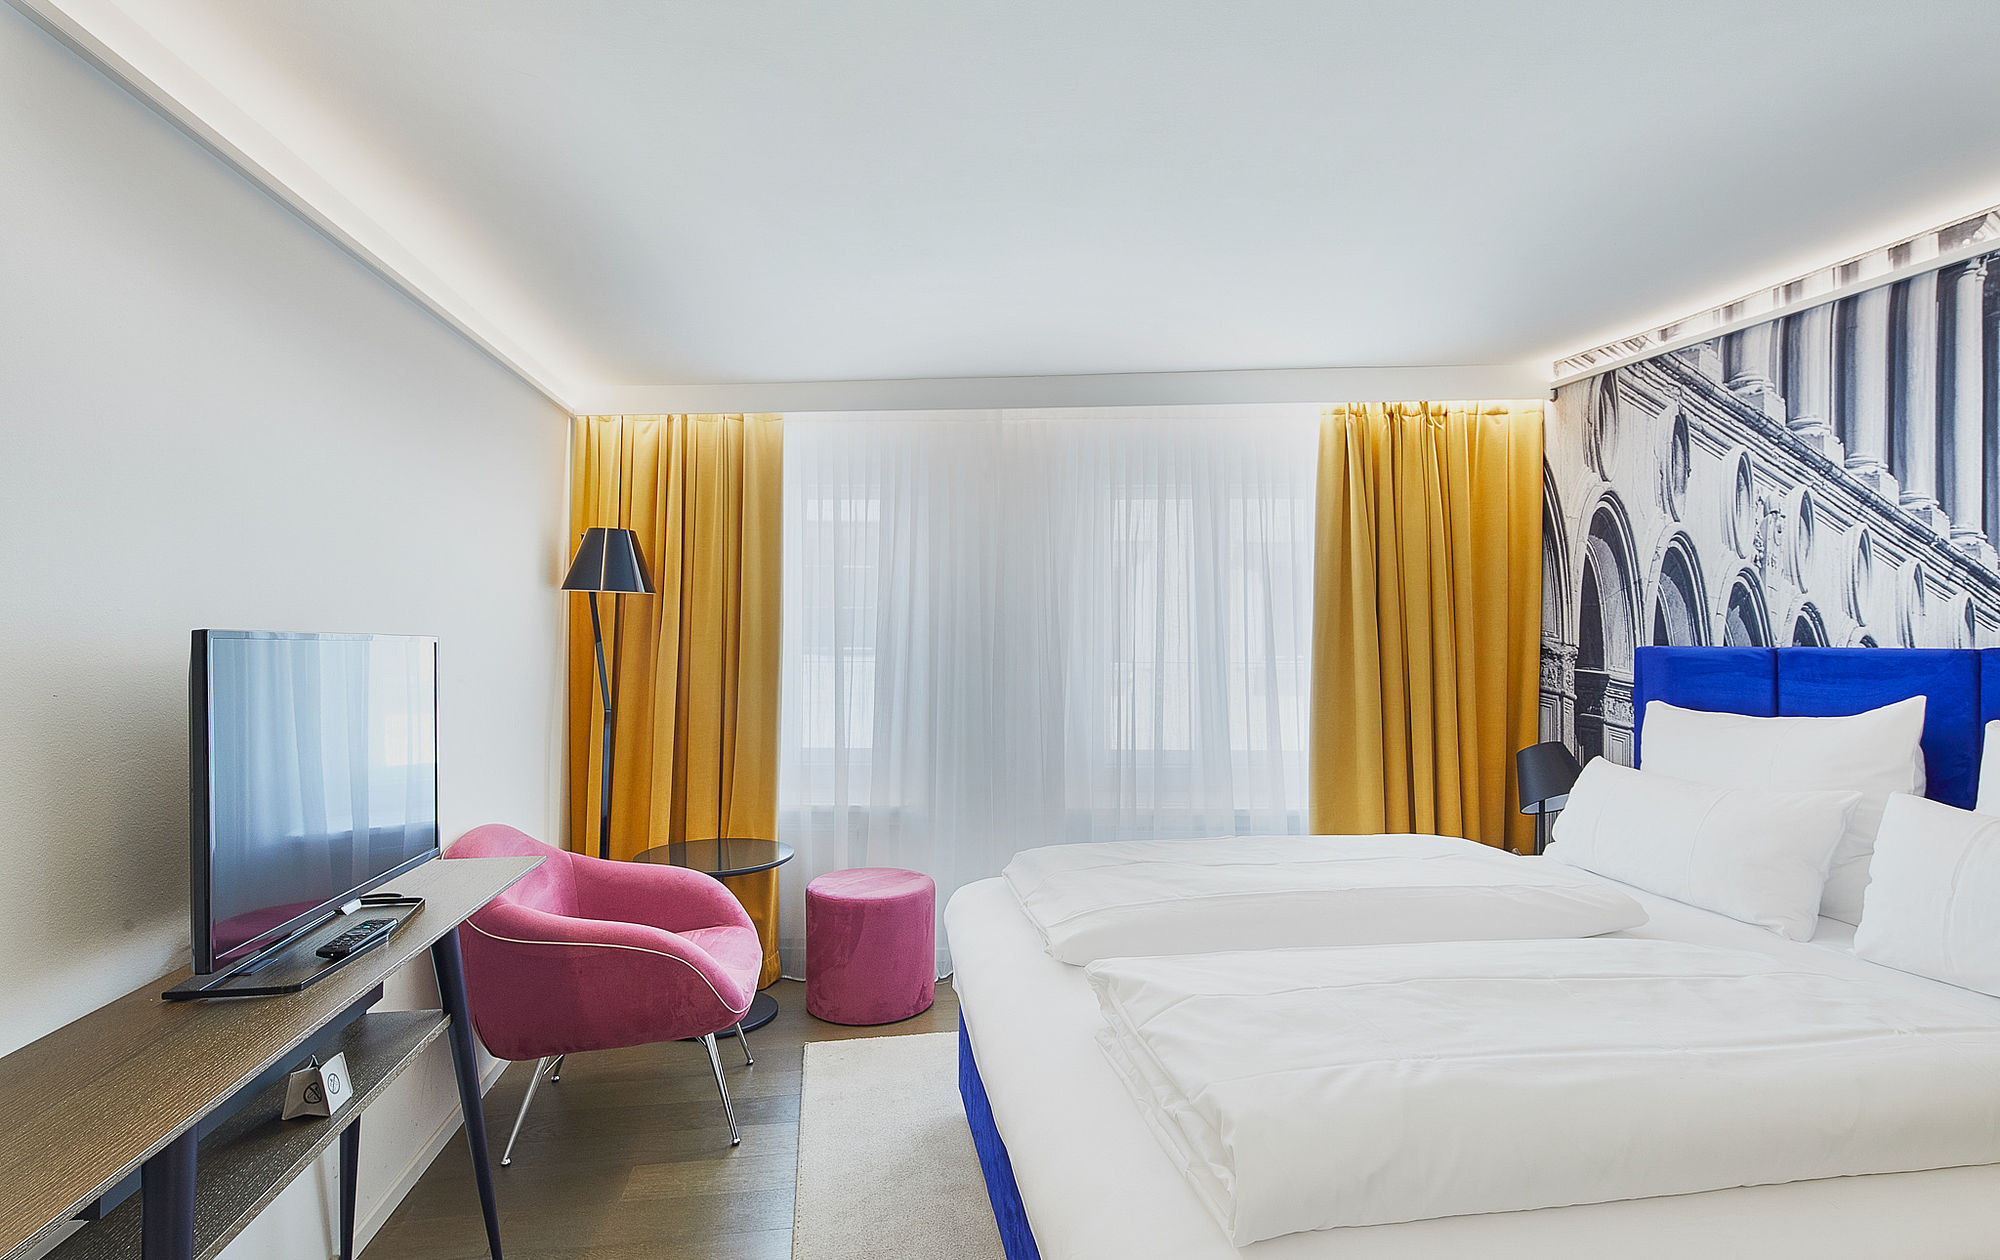 Standardzimmer des Hotels mit Designmöbeln in verschiedenen Farben